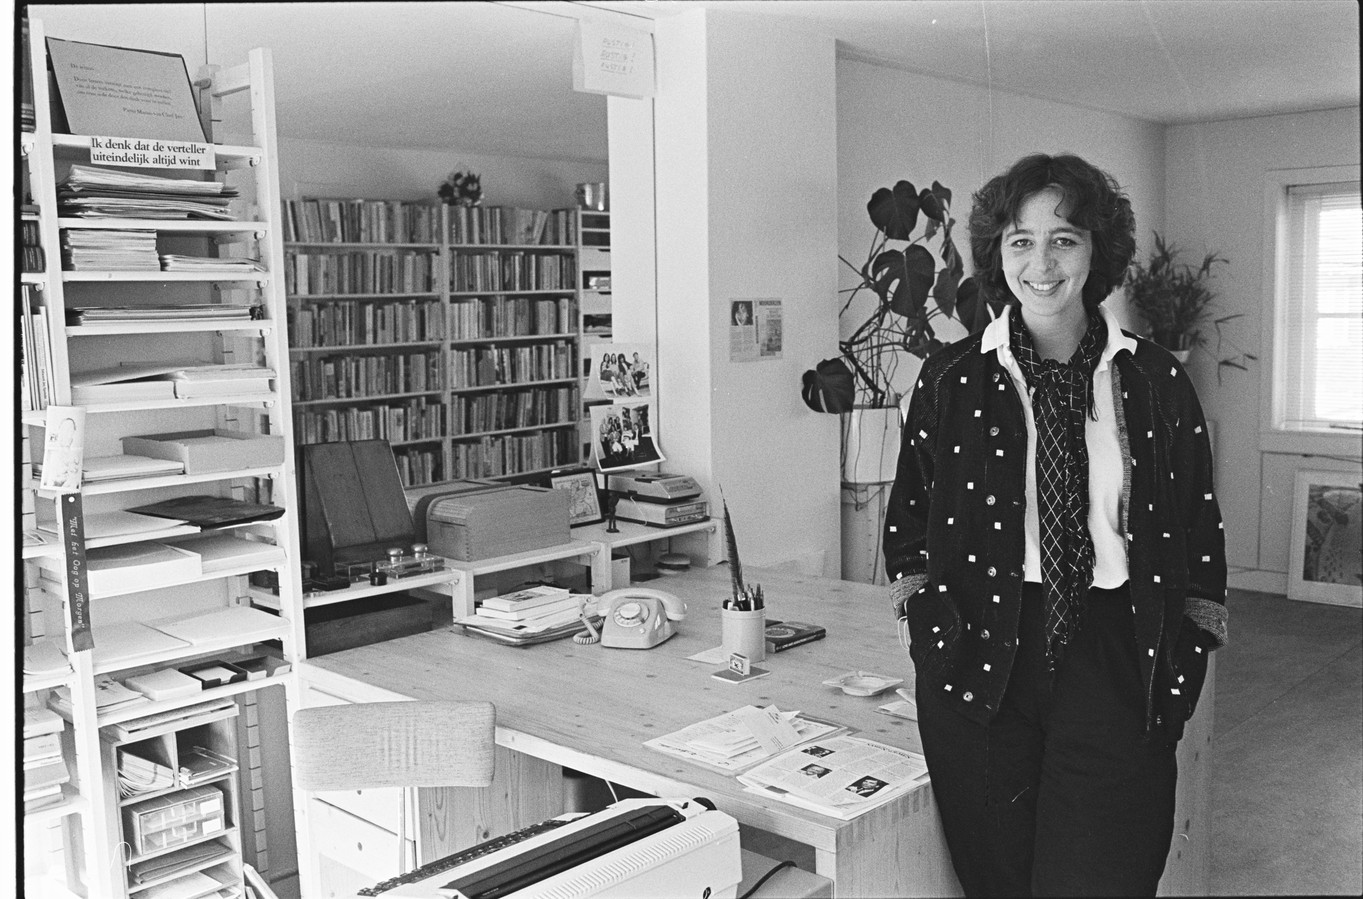 Foto: Corinne Noordenbos
,,Dit was een van de publiciteitsfoto’s voor Noorderzon, in 1986. We maakten toen voor het eerst ook een pocketeditie, daar is deze foto voor gebruikt. Aan mijn werkkamer is weinig veranderd. Ik heb alleen andere telefoons!’’